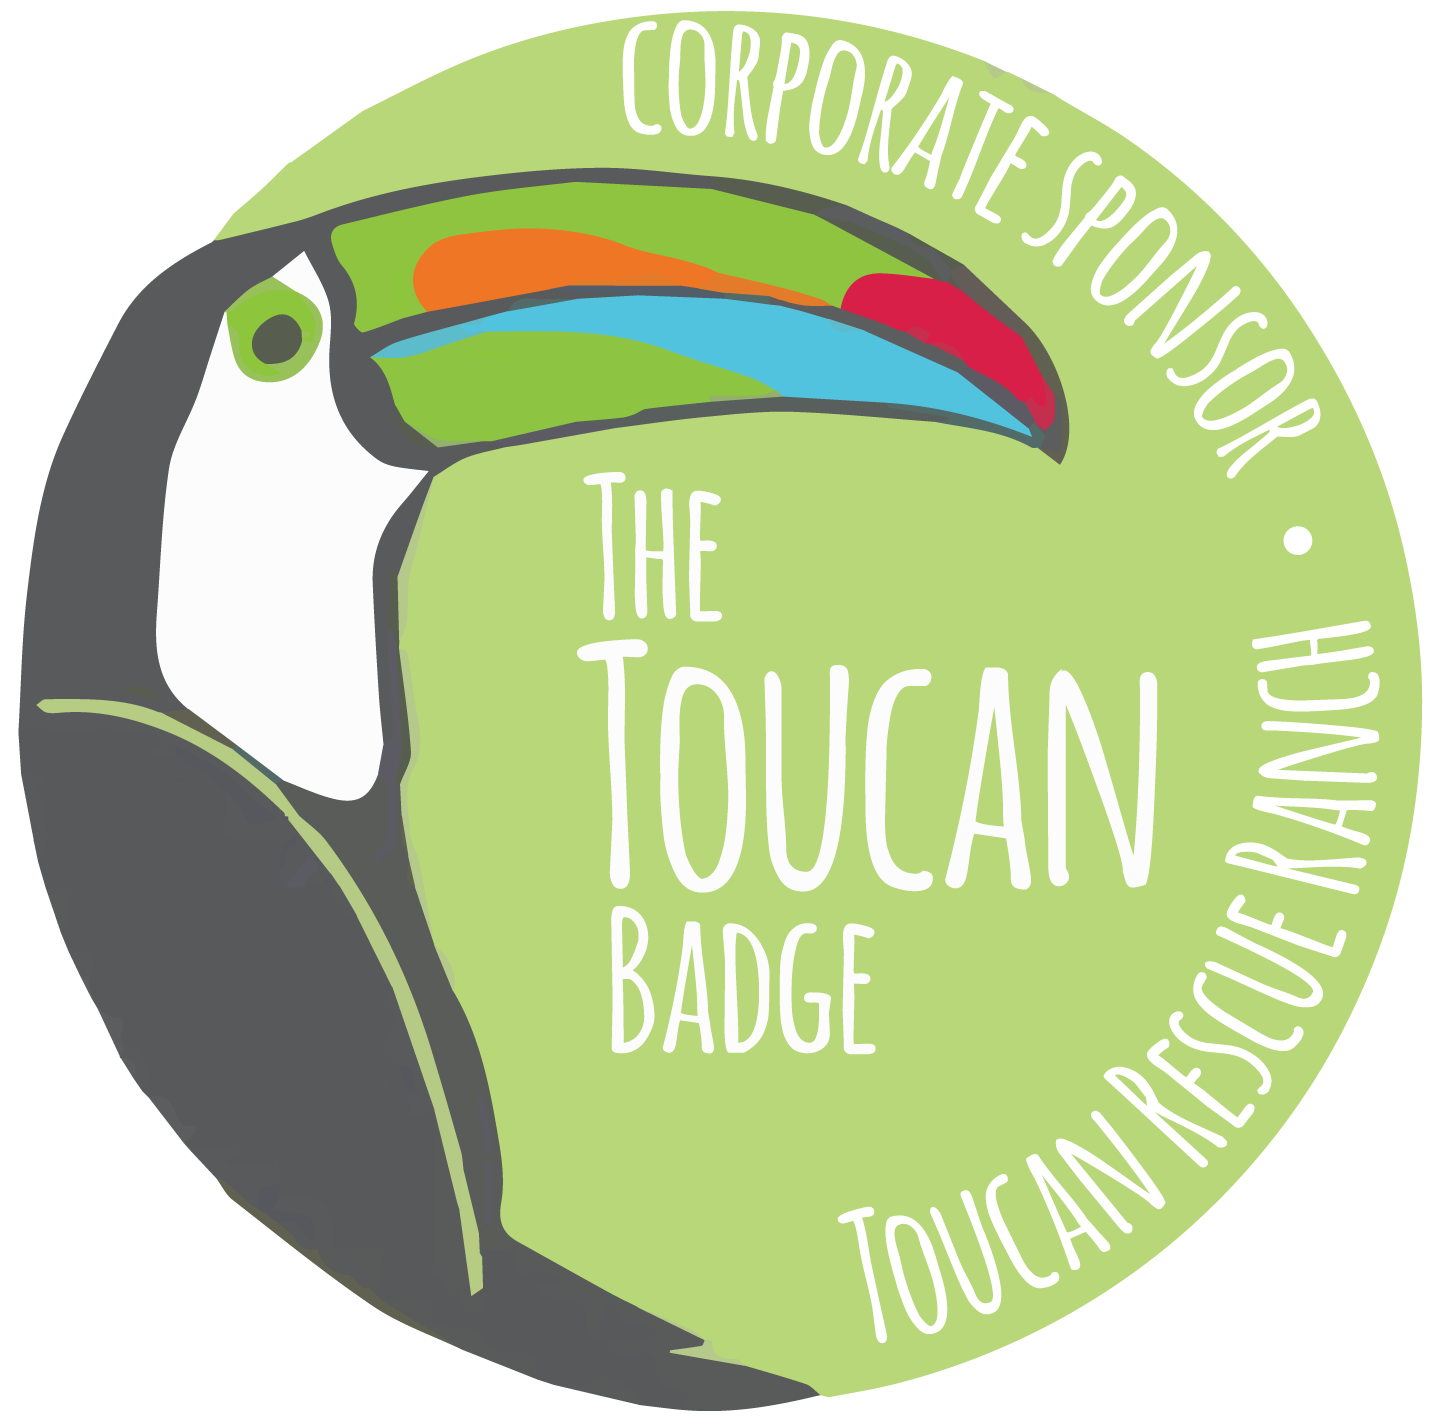 toucan clipart animal amazon rainforest